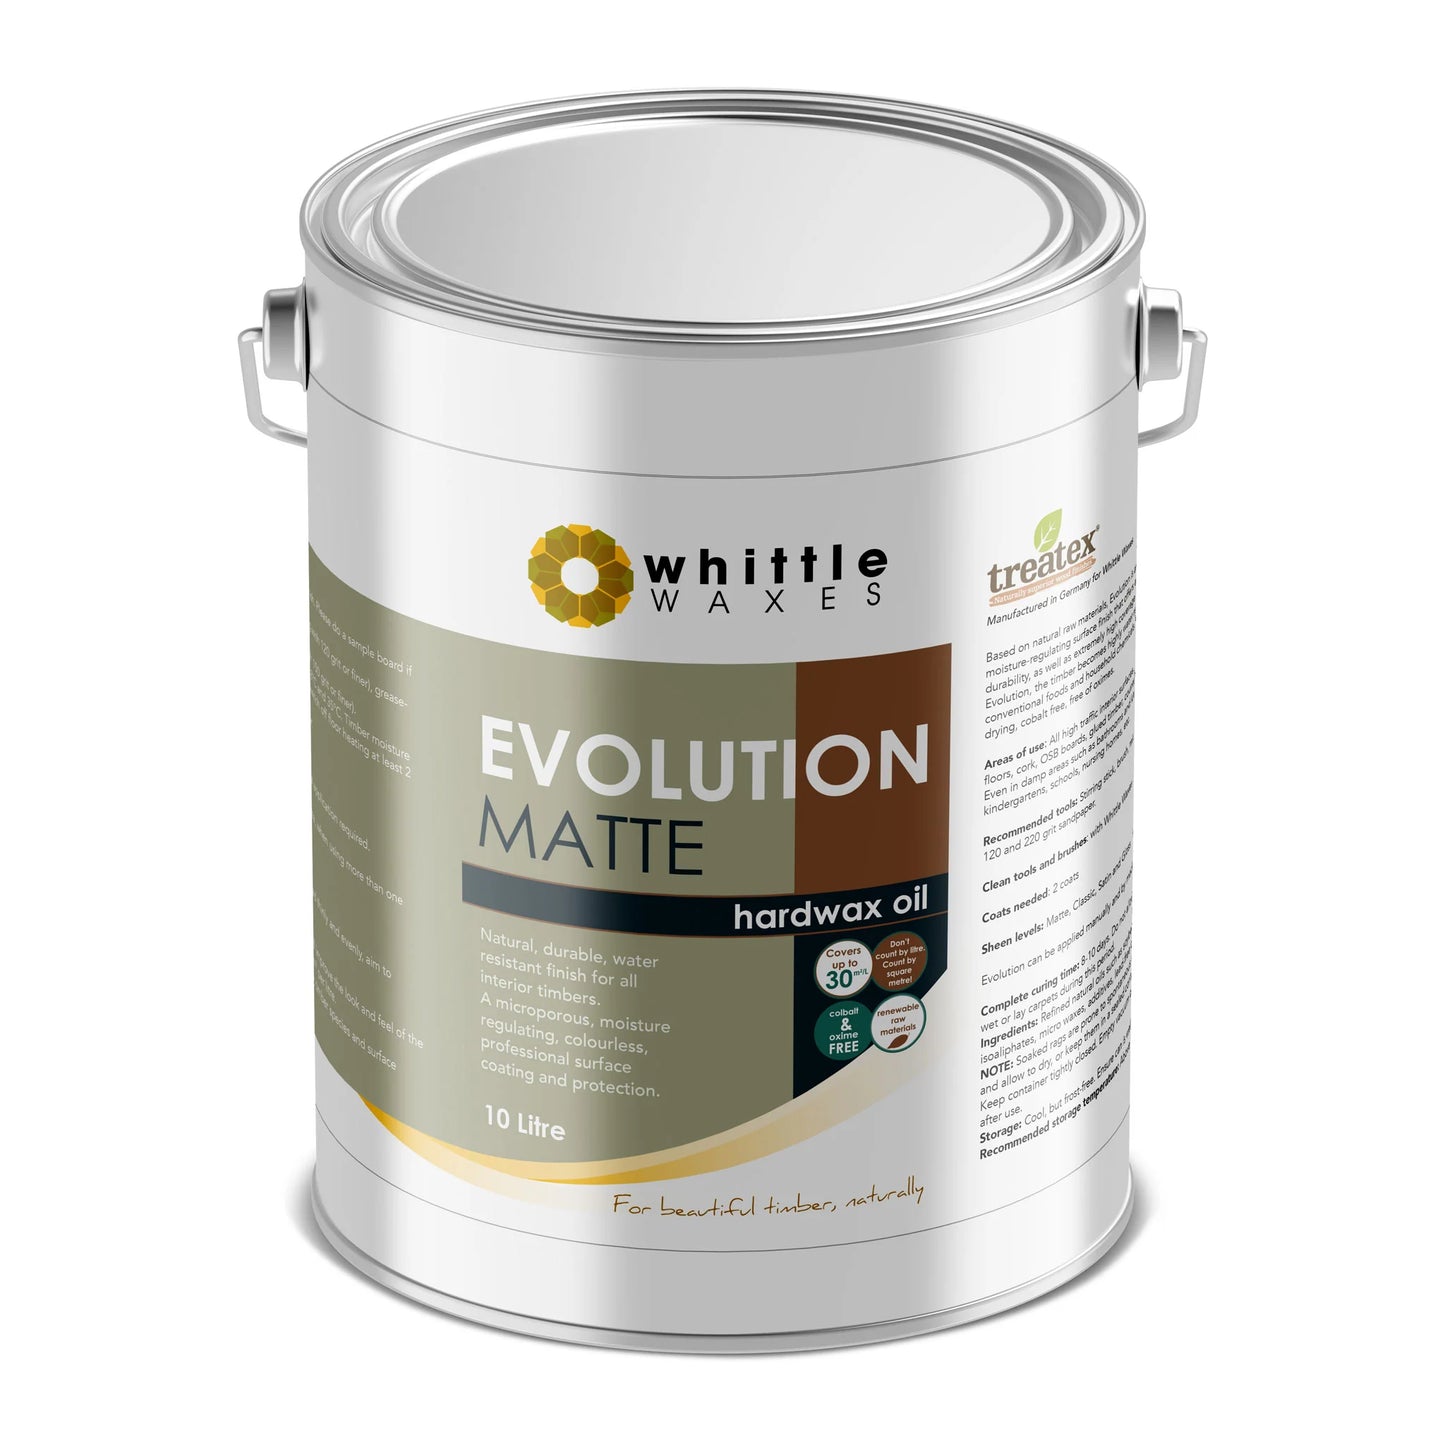 Whittle Waxes - Evolution Hardwax Oil - Matt